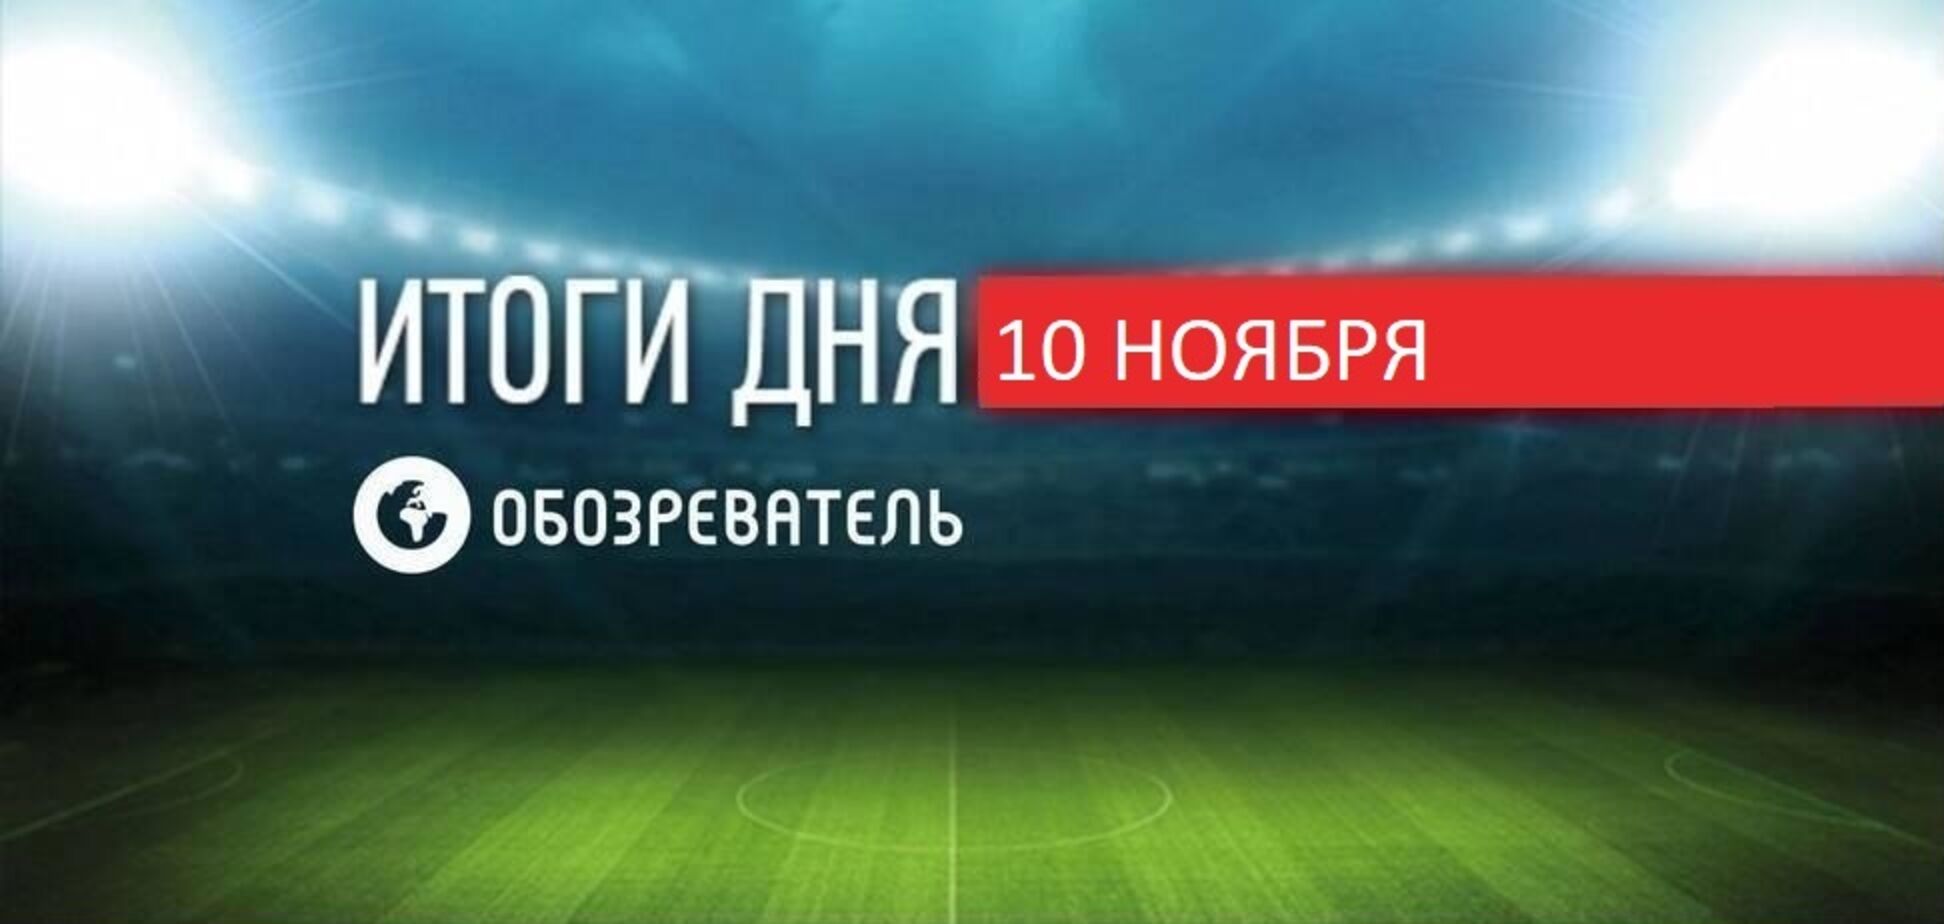 Шевченко подшутил над Усиком в сборной Украины: спортивные итоги 10 ноября